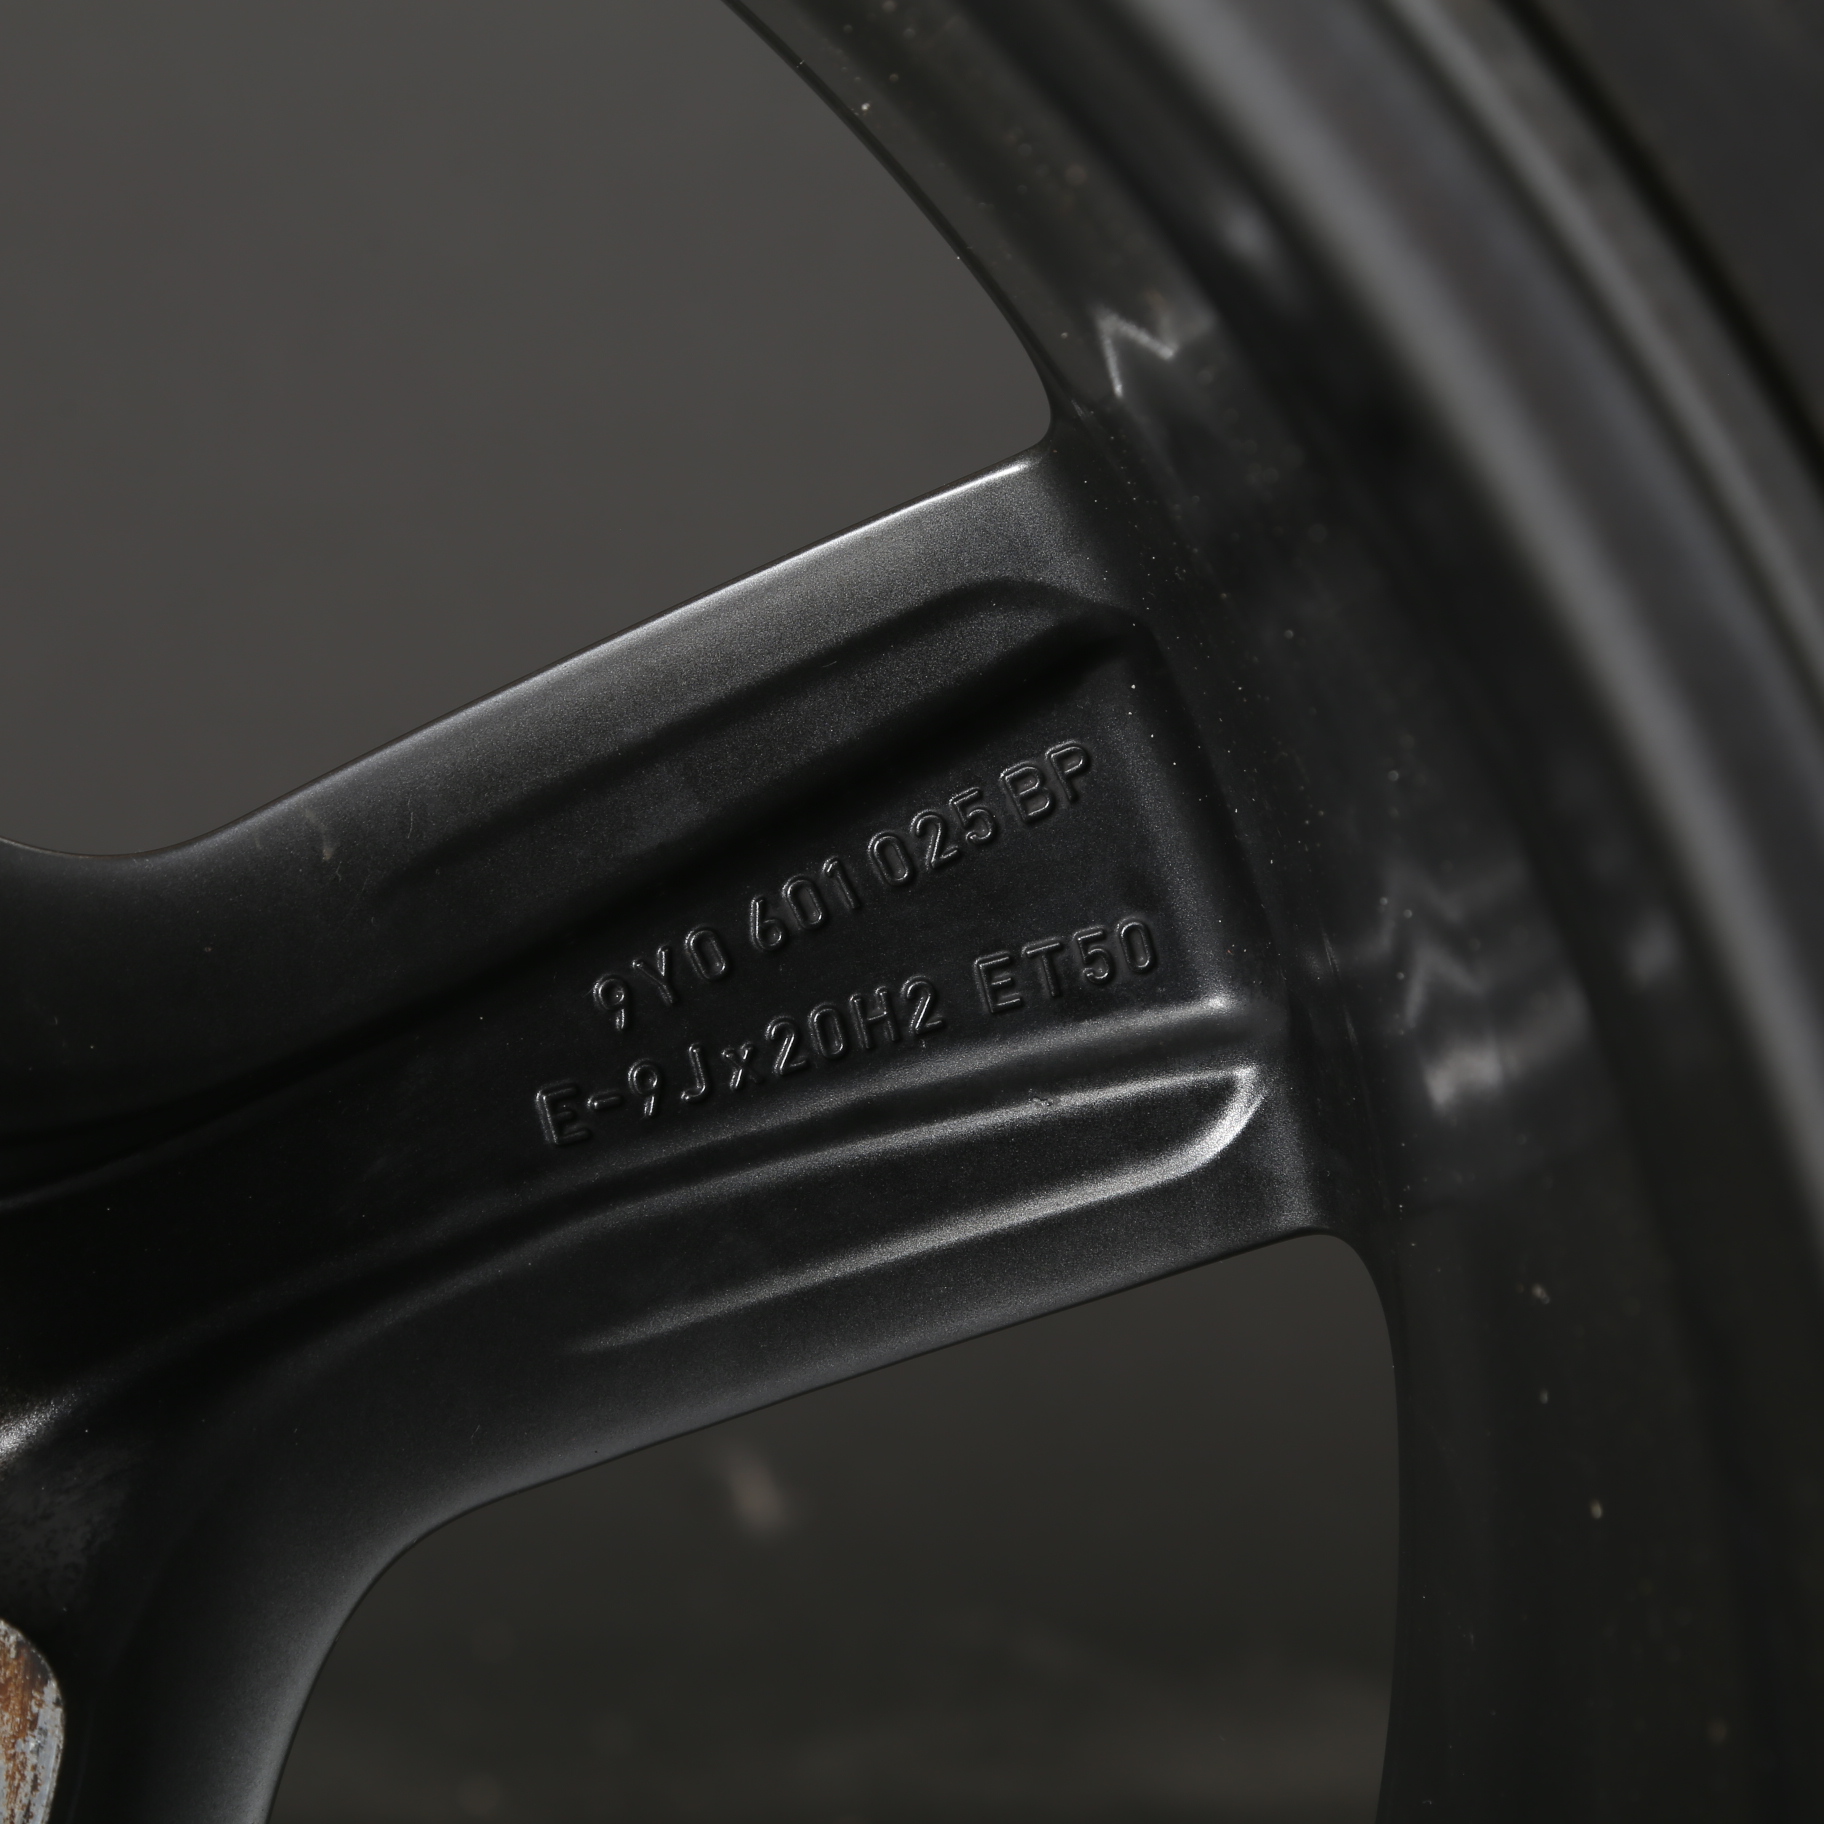 20 pouces roues d'hiver d'origine Porsche Cayenne Coupé 9YB Sport Classic 9Y3601025AH